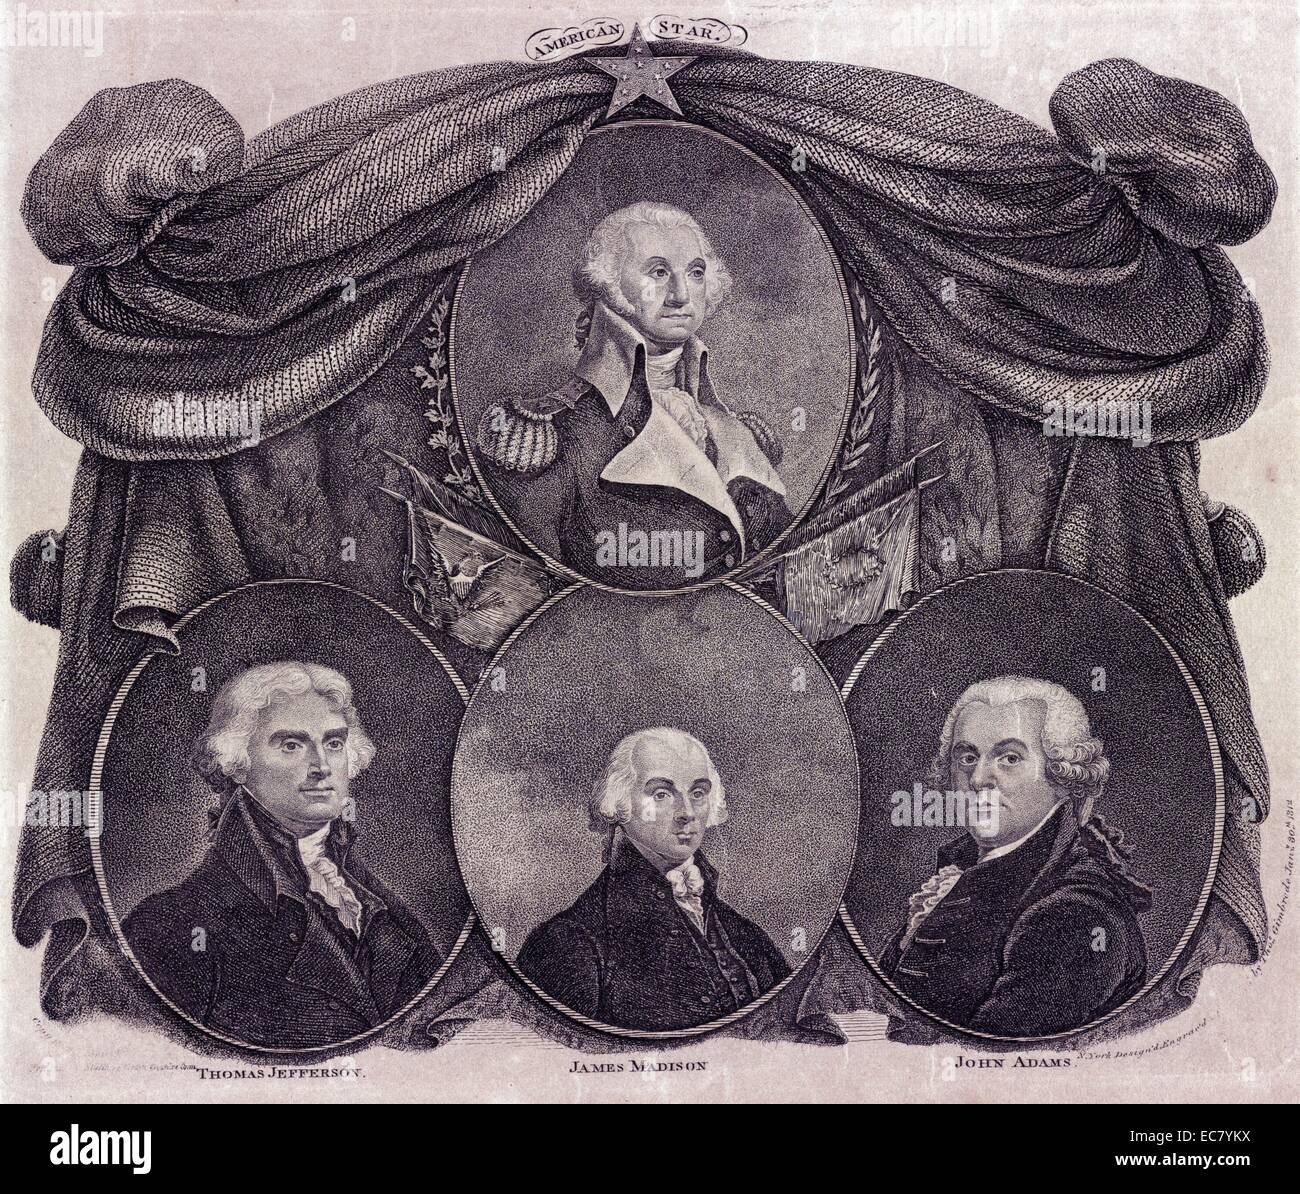 Star américaine Médaillon des portraits de George Washington et (ci-dessous, de gauche à droite) Thomas Jefferson, James Madison, et John Adams sont formulées contre un rideau de drapés et des fourrures surmonté d'une étoile. Le portrait de Washington est nimbées de chênes et de laurier, et décorée de drapeaux, l'un portant le sceau des États-Unis, et l'autre une couronne. Banque D'Images